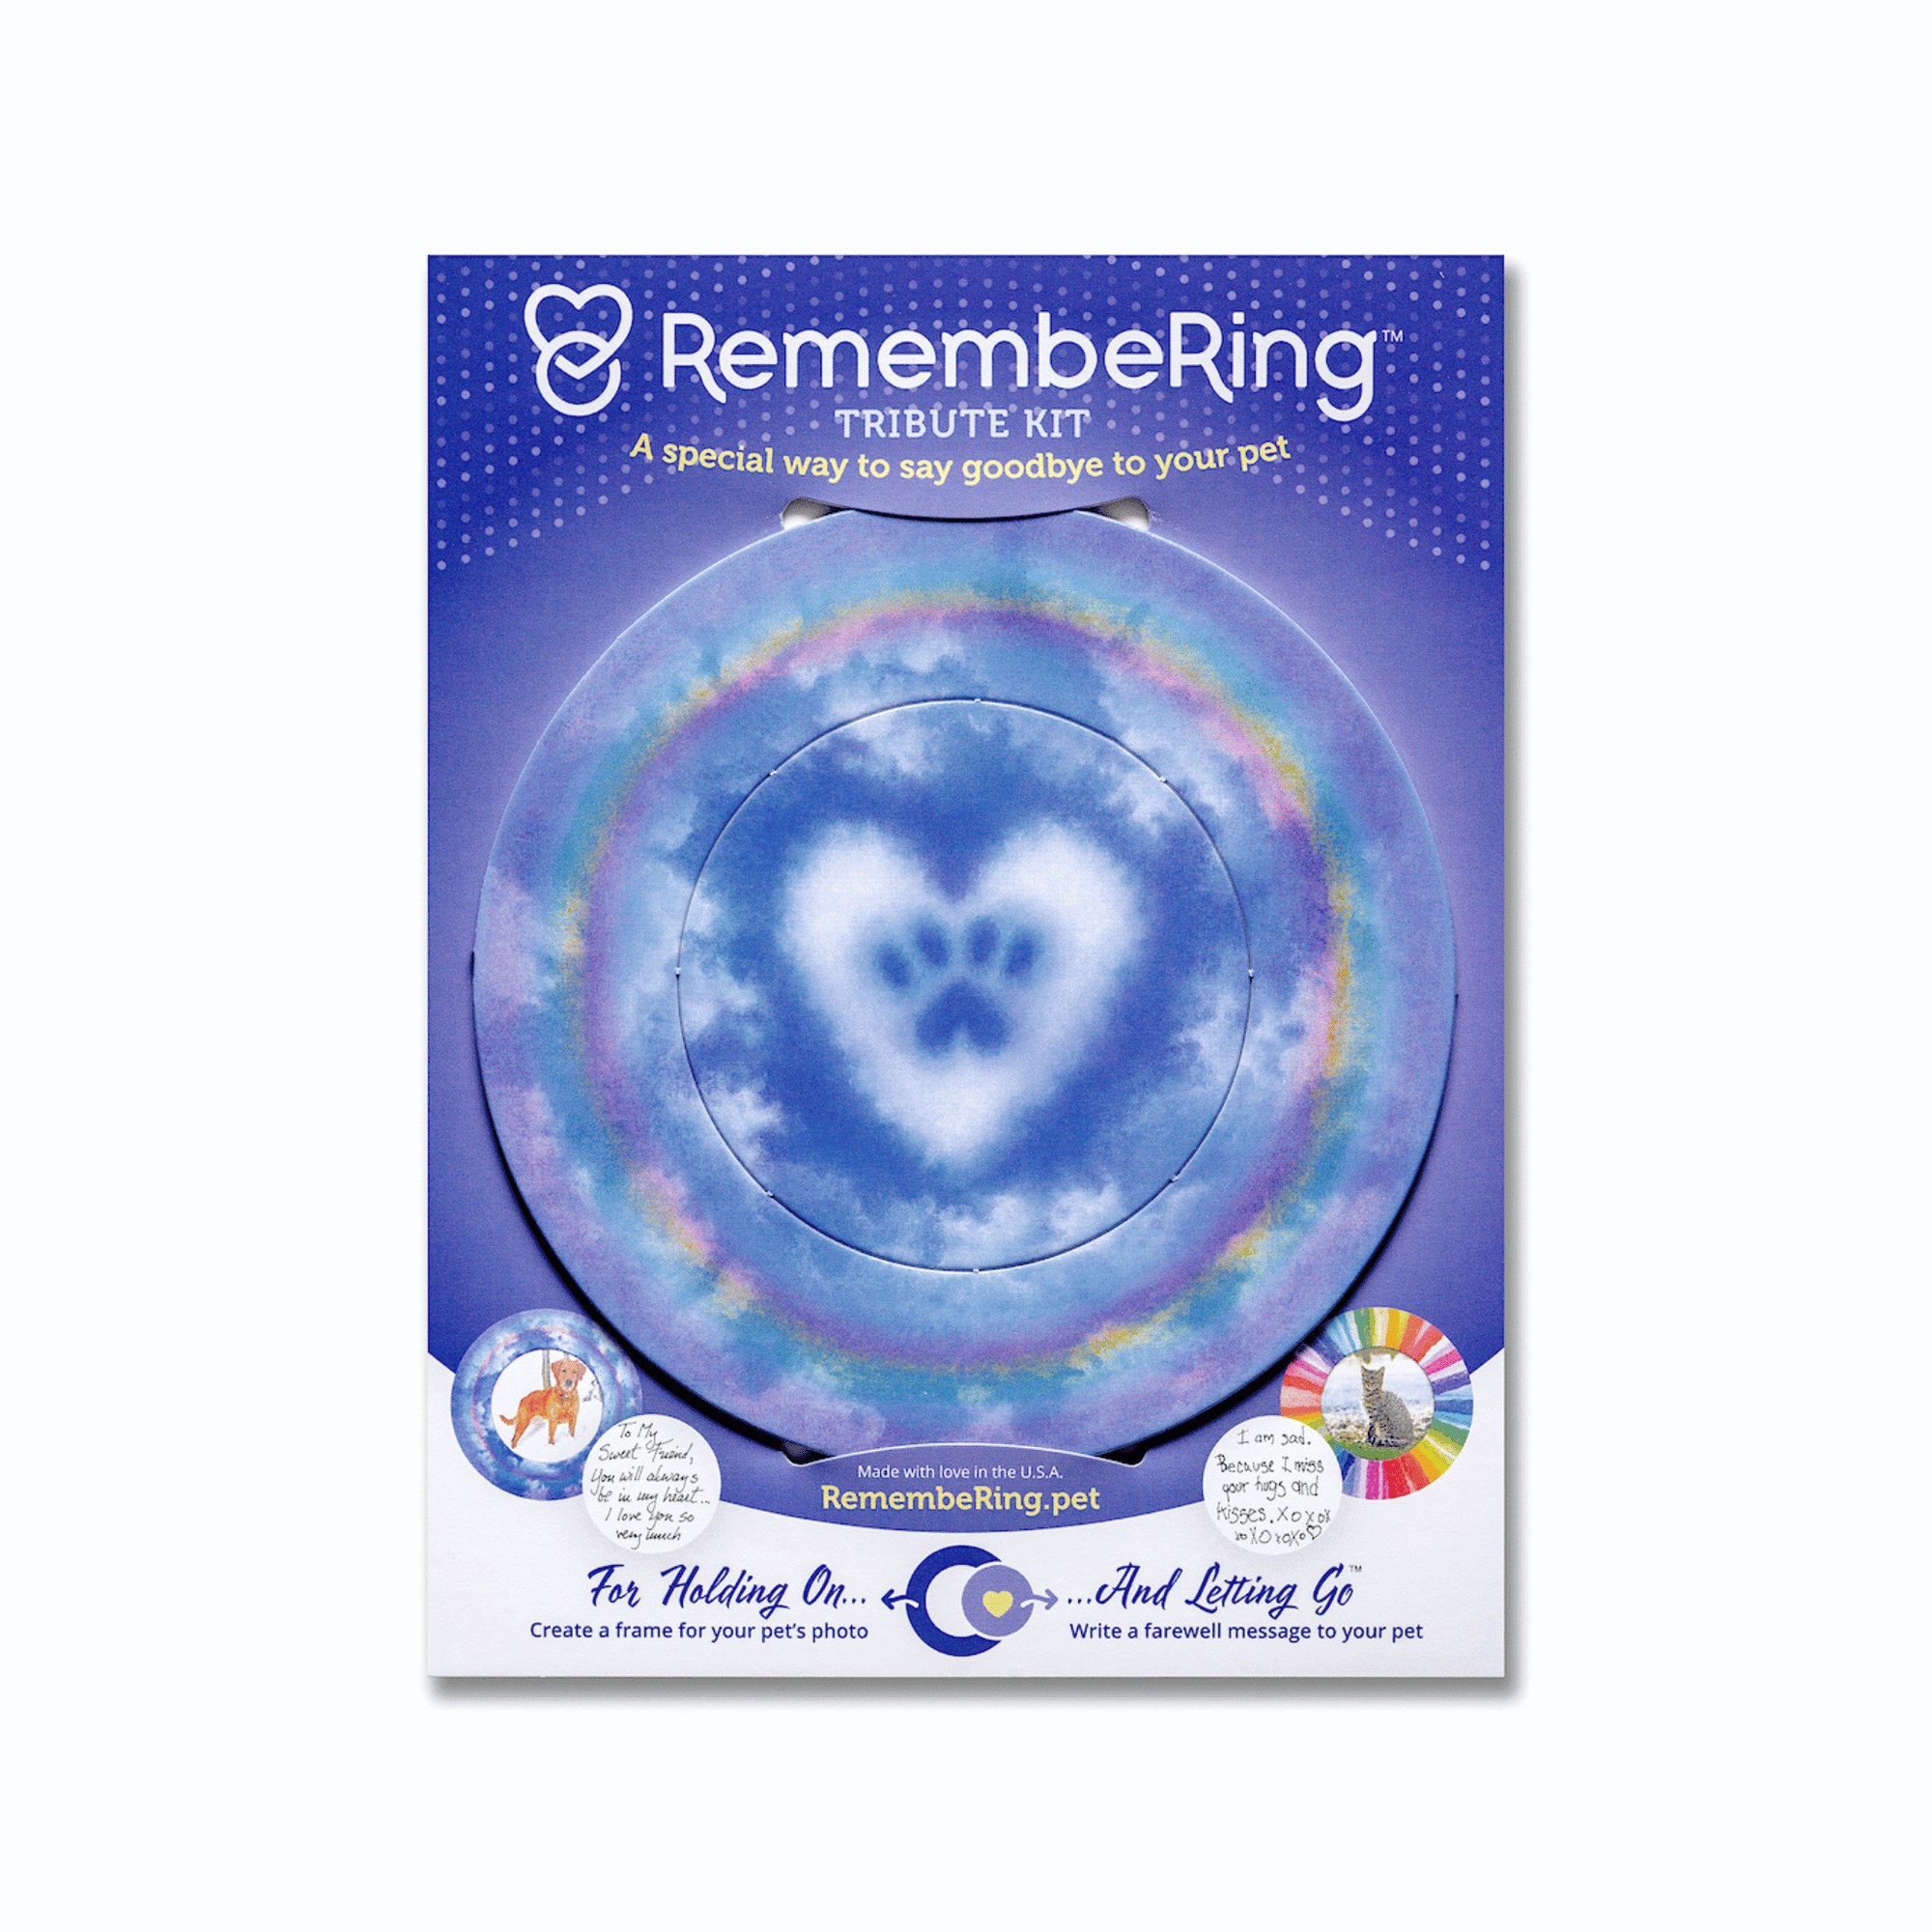 RemembeRing Pet Memorial Tribute Kit - Cloud Paw Print Design